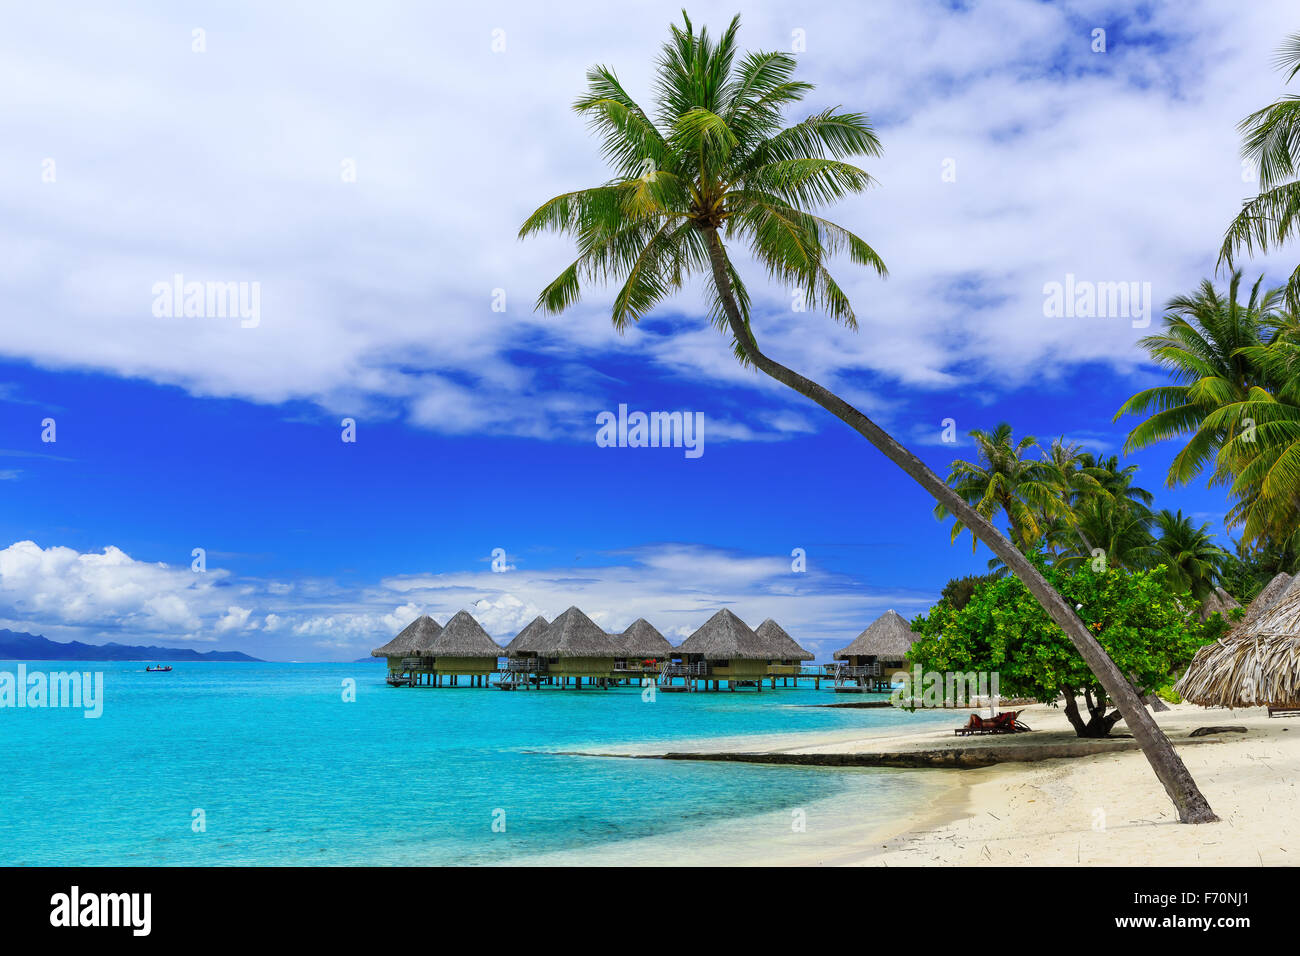 Bungalows sur pilotis de luxe tropical resort, Bora Bora Island, près de Tahiti, Polynésie française, l'océan Pacifique Banque D'Images